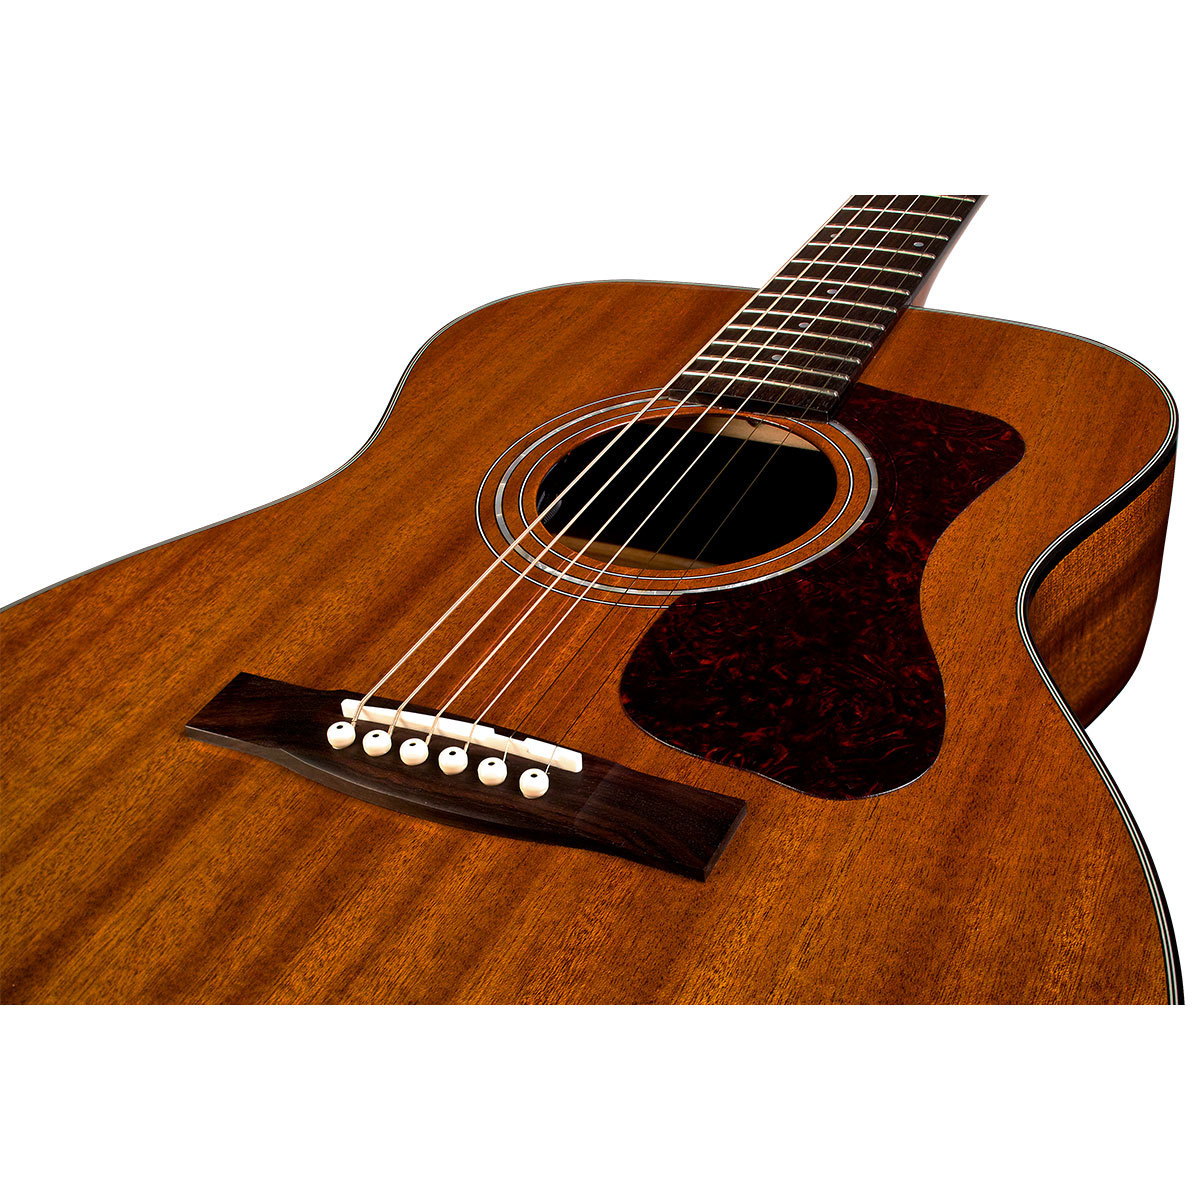 Guild OM-120 Acoustic Guitar with Bag - Natural